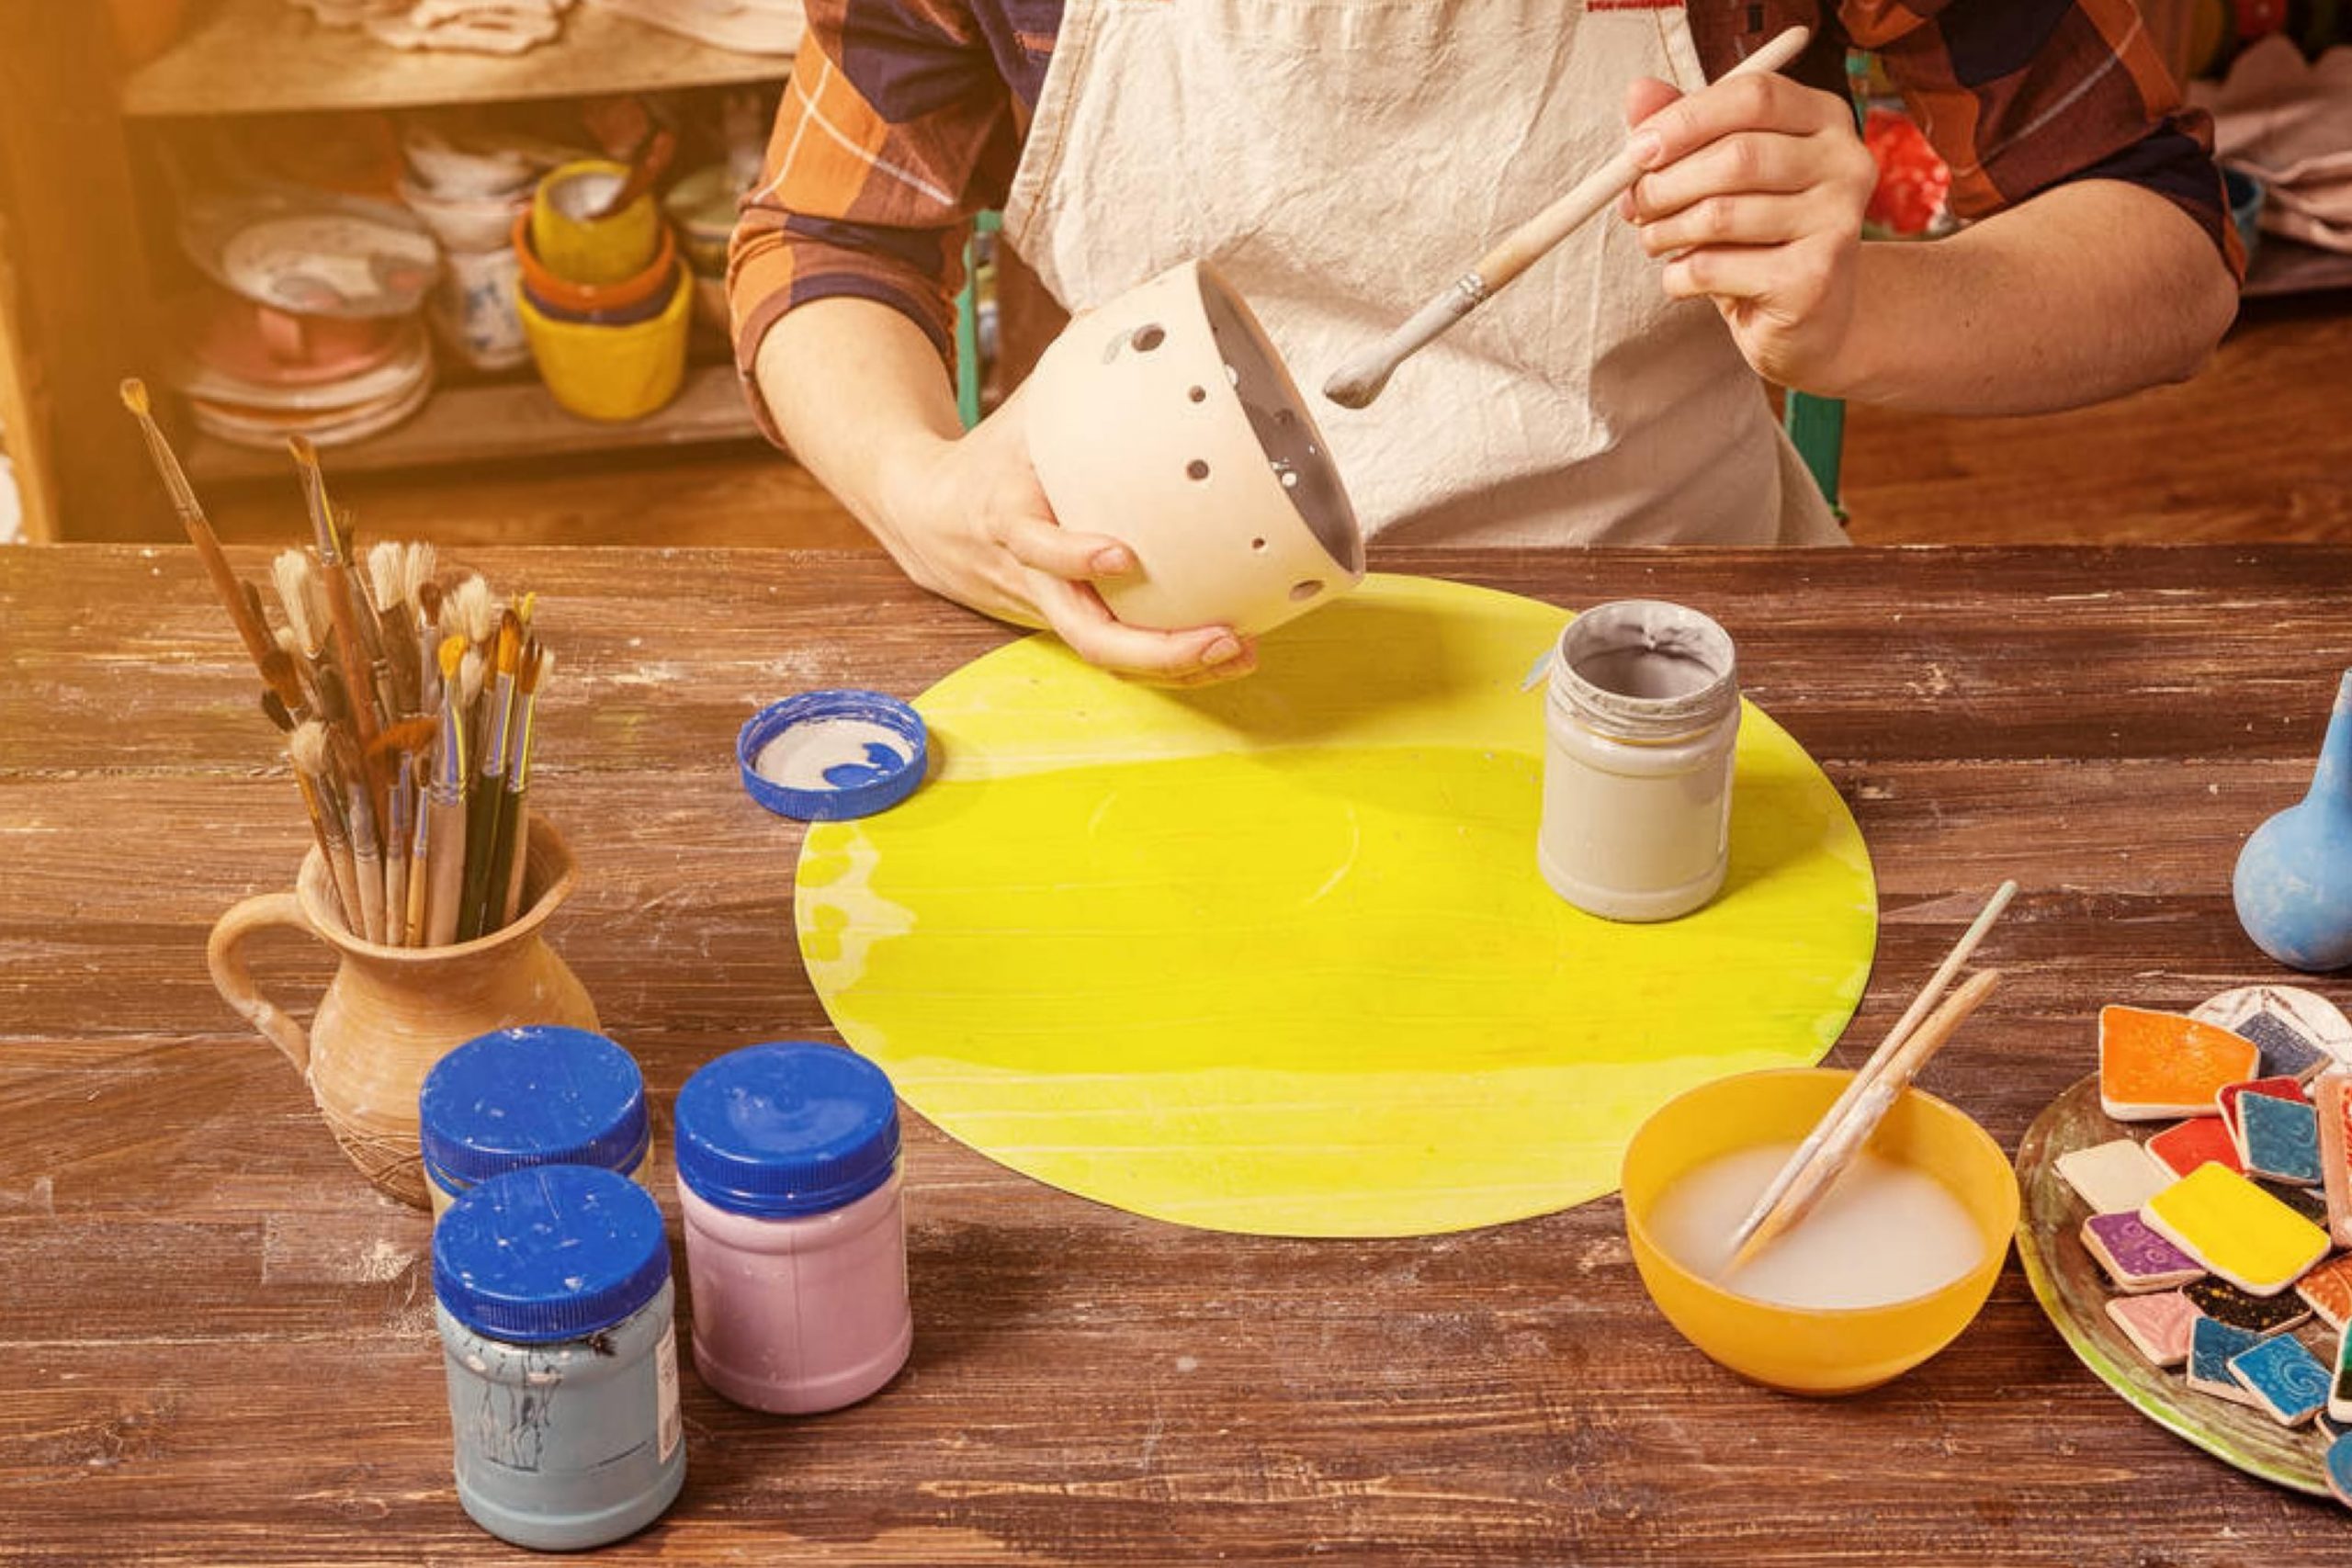 How to Paint Bisque Ceramics